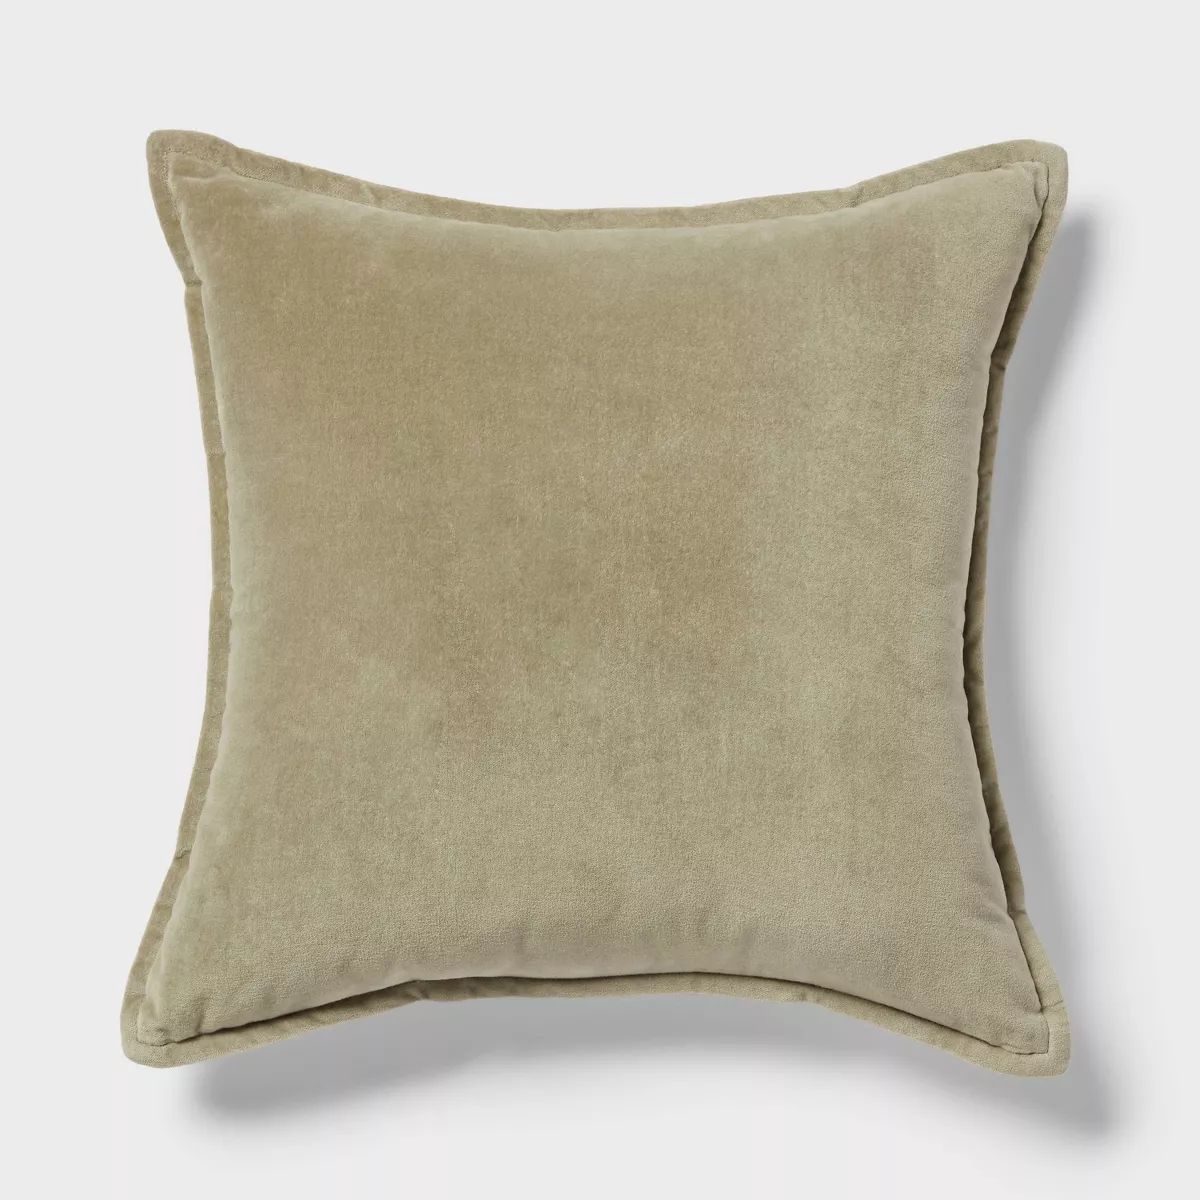 Trad Cotton Velvet with Linen Reverse Oblong Dec Pillow - Threshold™ | Target